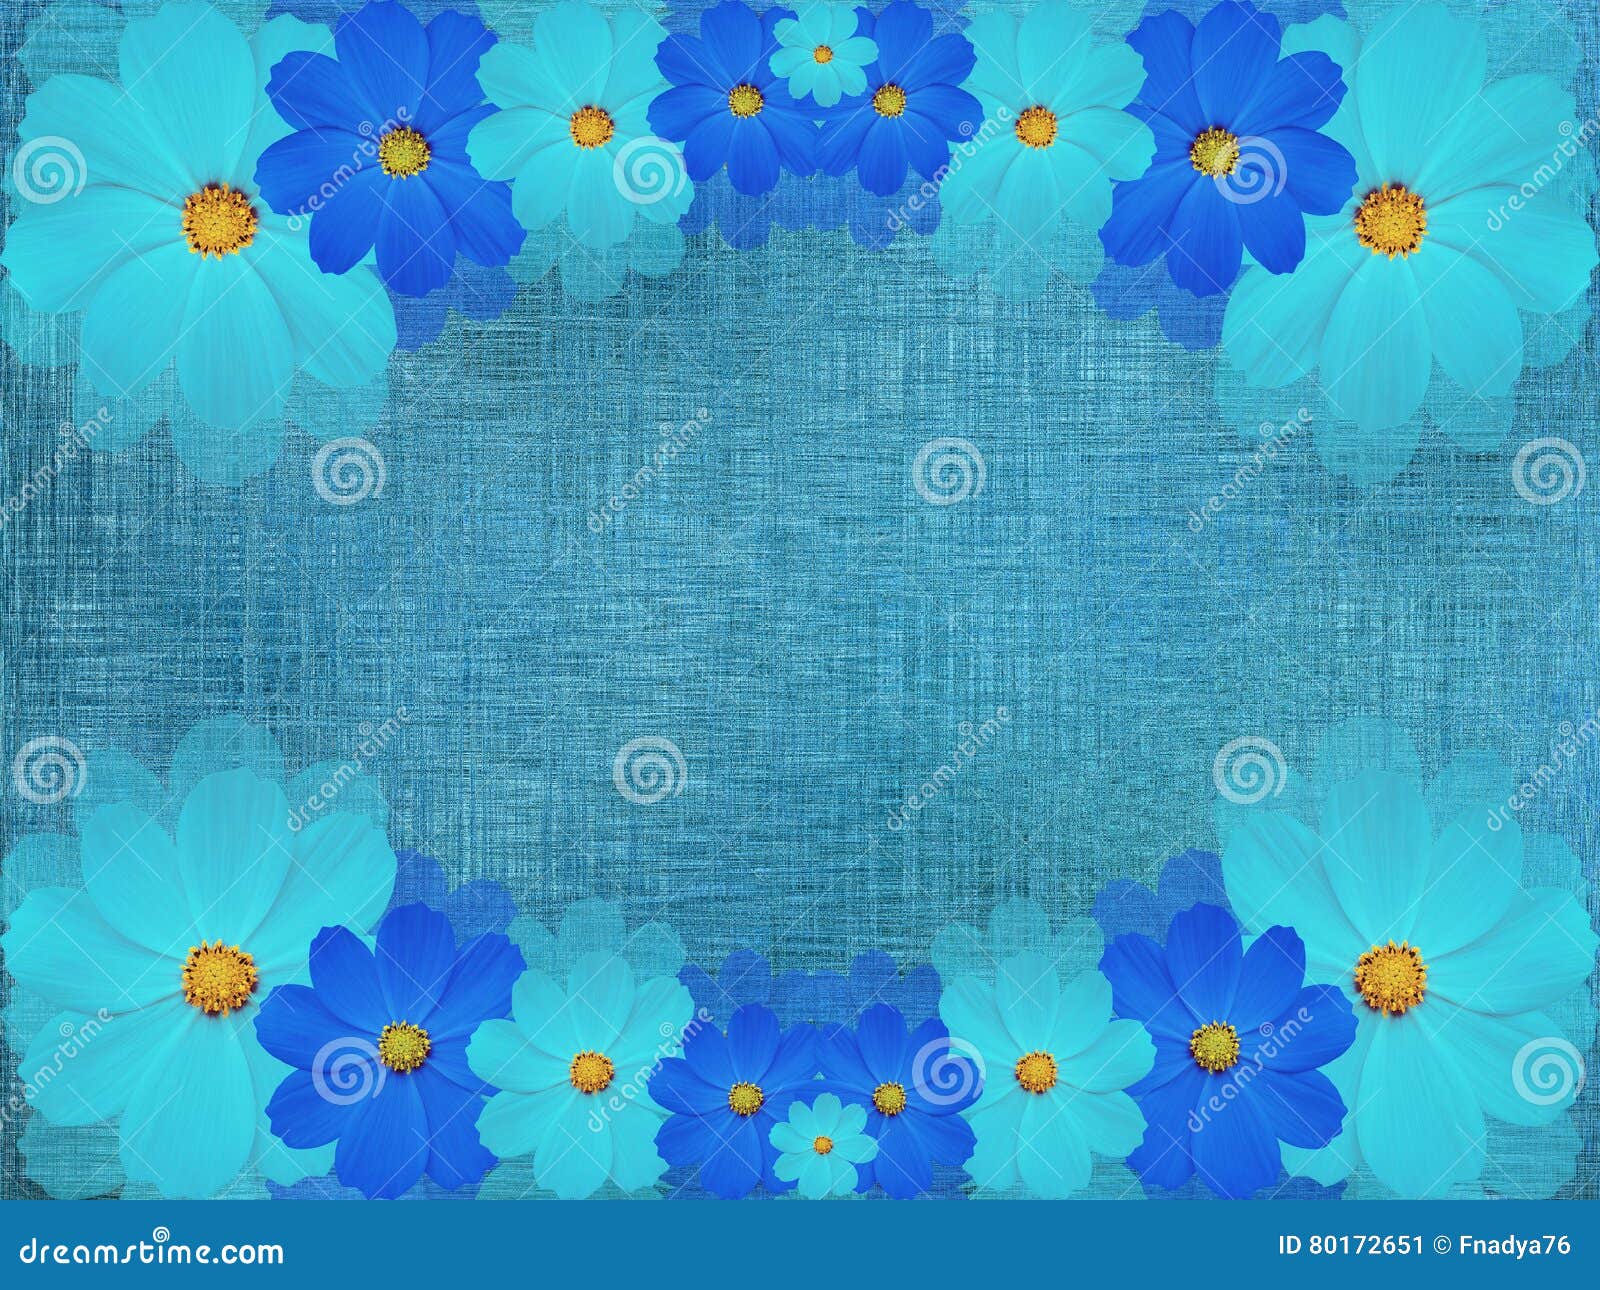 Flores Azuis De Turquesa, No Fundo De Azul-turquesa Composição Floral  Brilhante Ilustração Stock - Ilustração de flor, wallpaper: 80172651